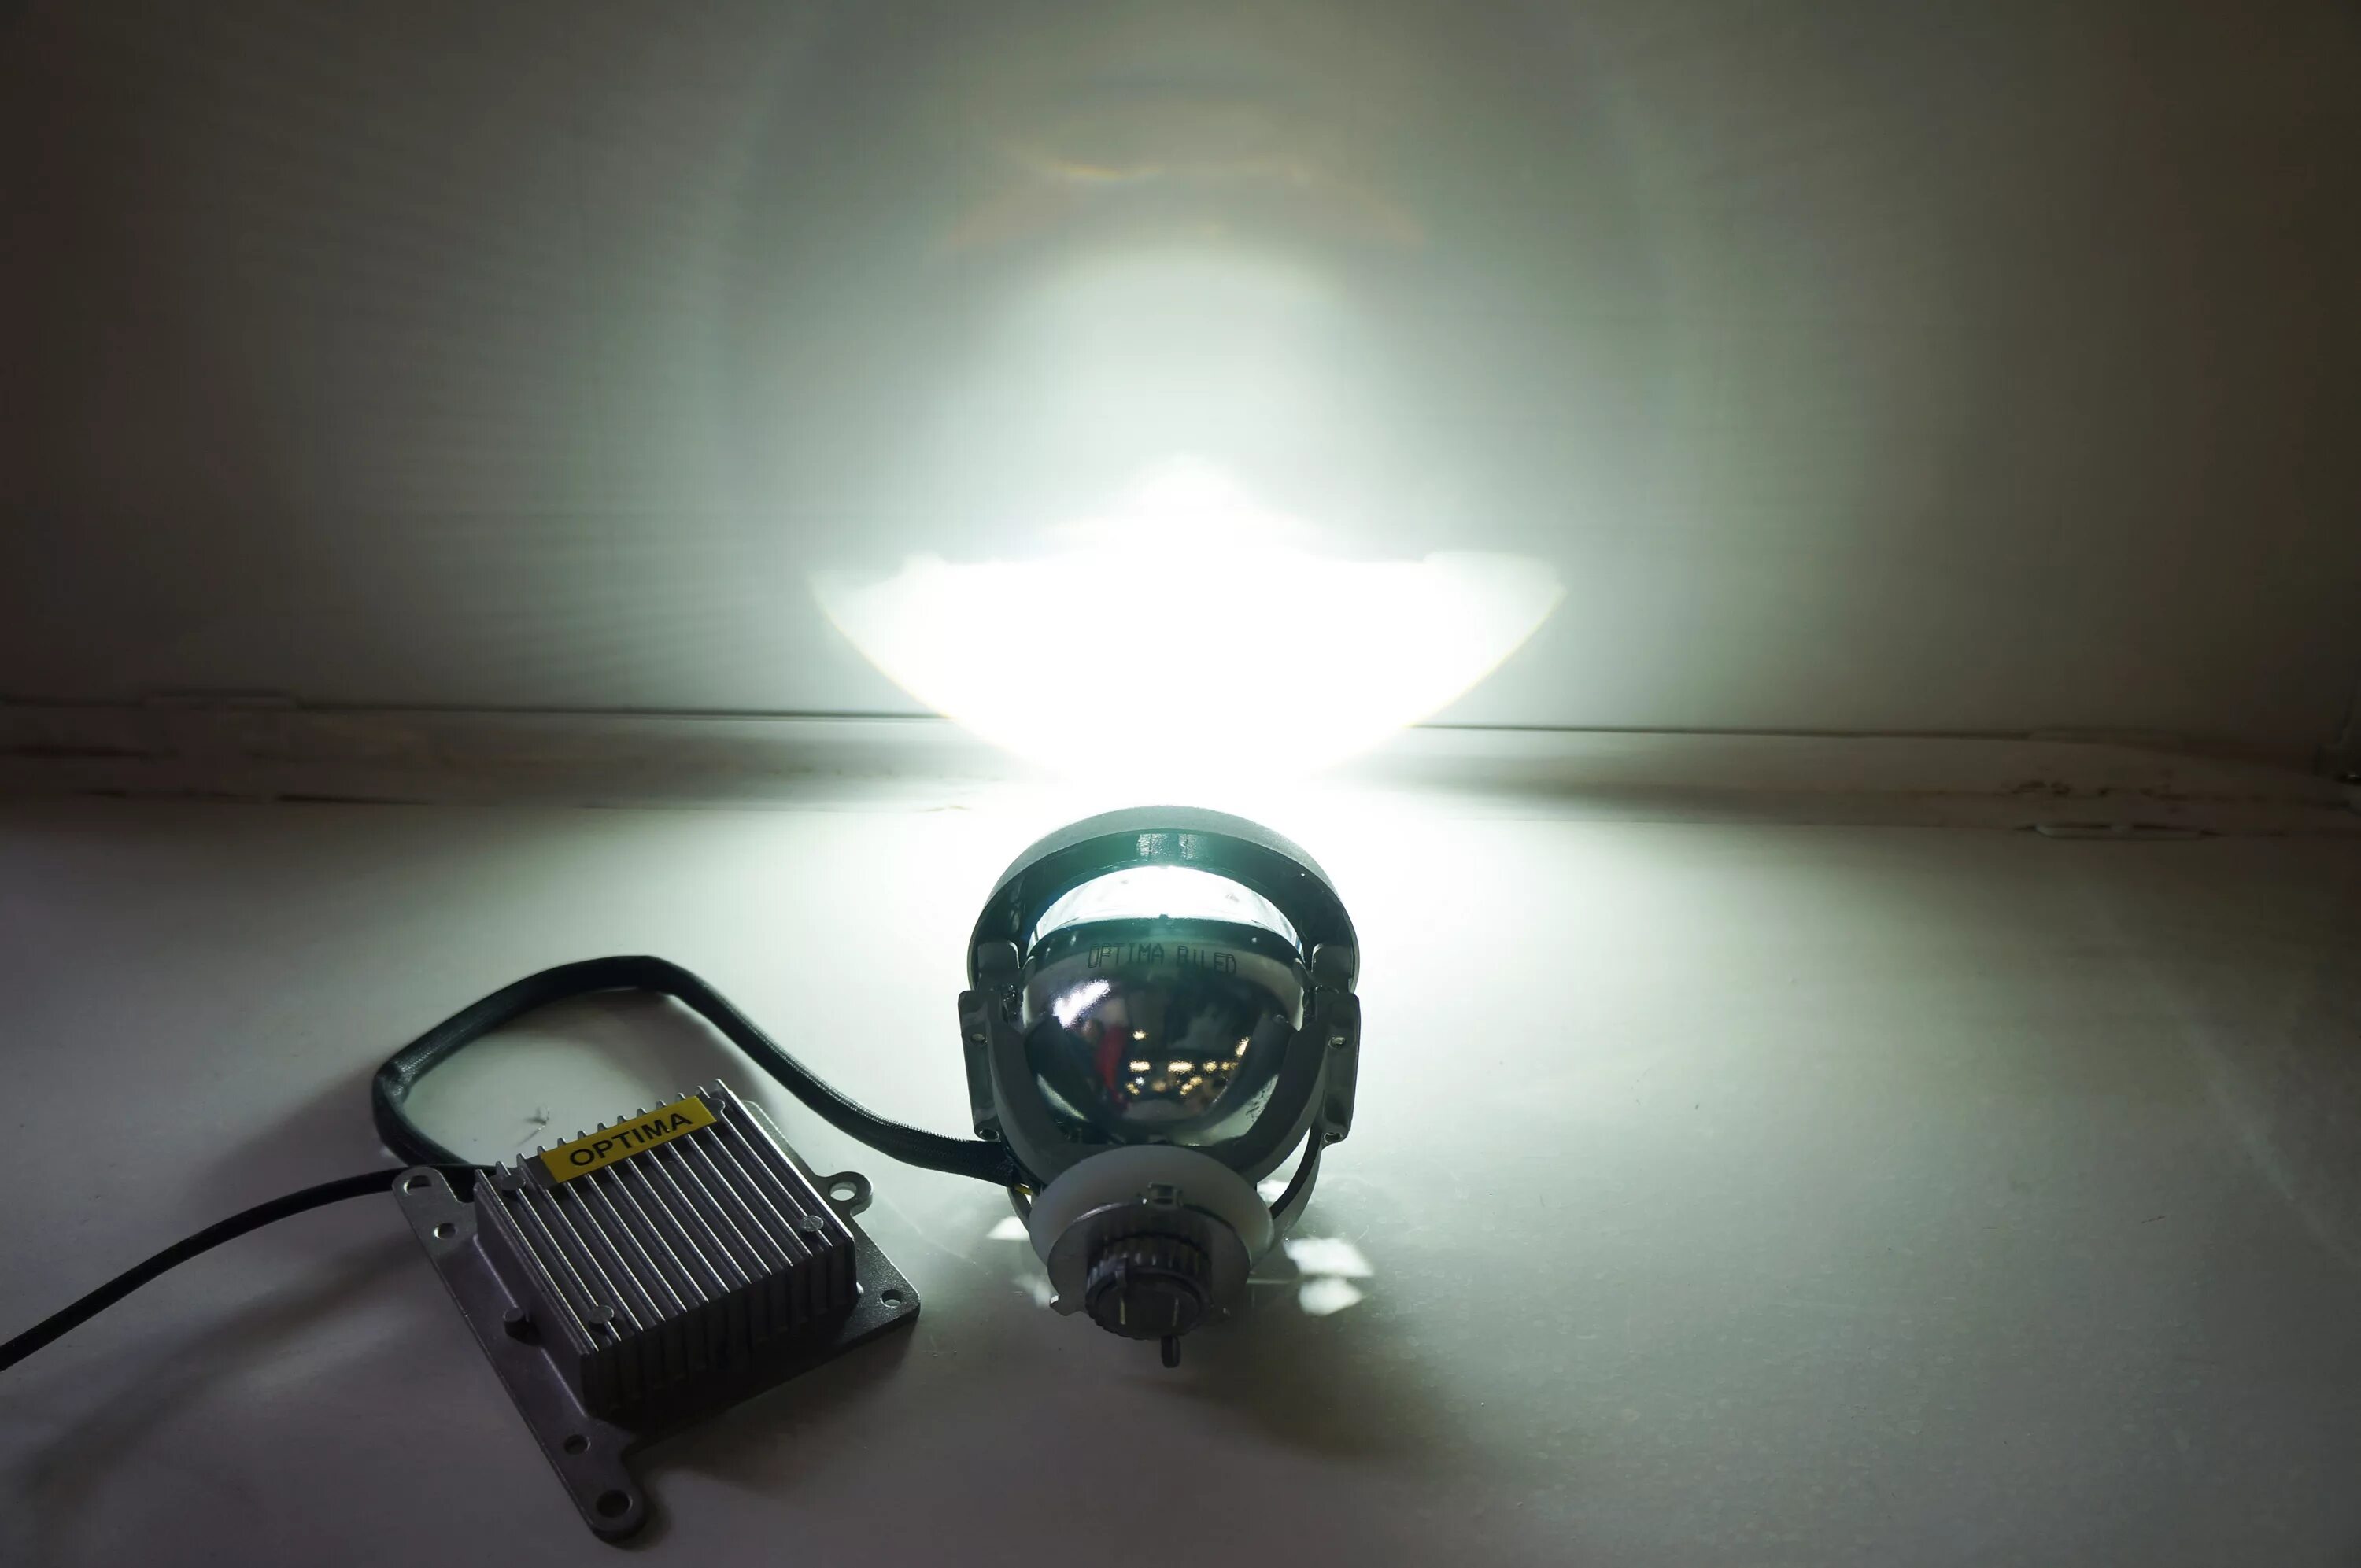 Источник света слева. Bi led Lens 3.0 LG Innotek 5100. Оптима лампы для линз Оптима 3. Диодные линзы дальнего и ближнего света. Свет диодных линз.